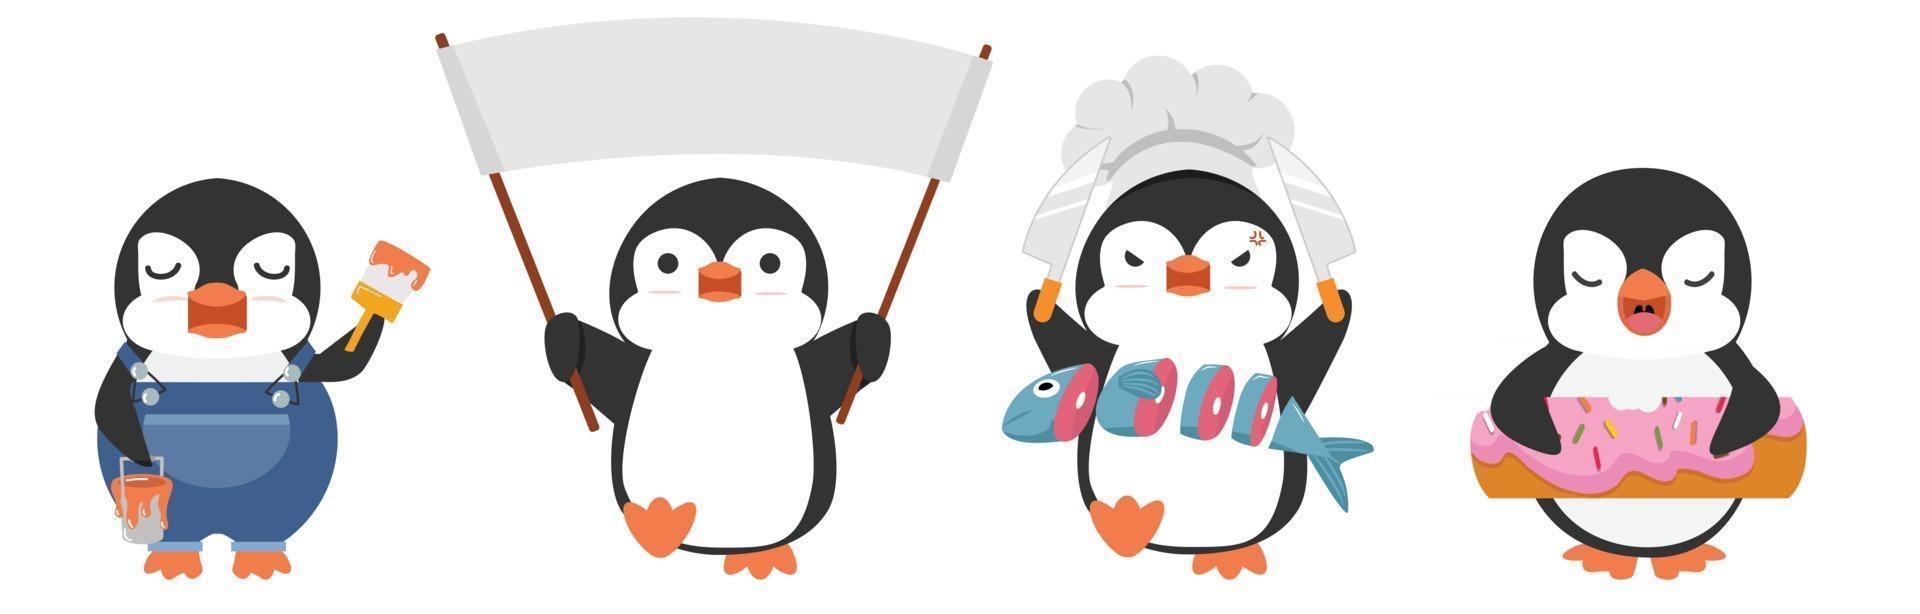 söt pingvin seriefigurer vektor